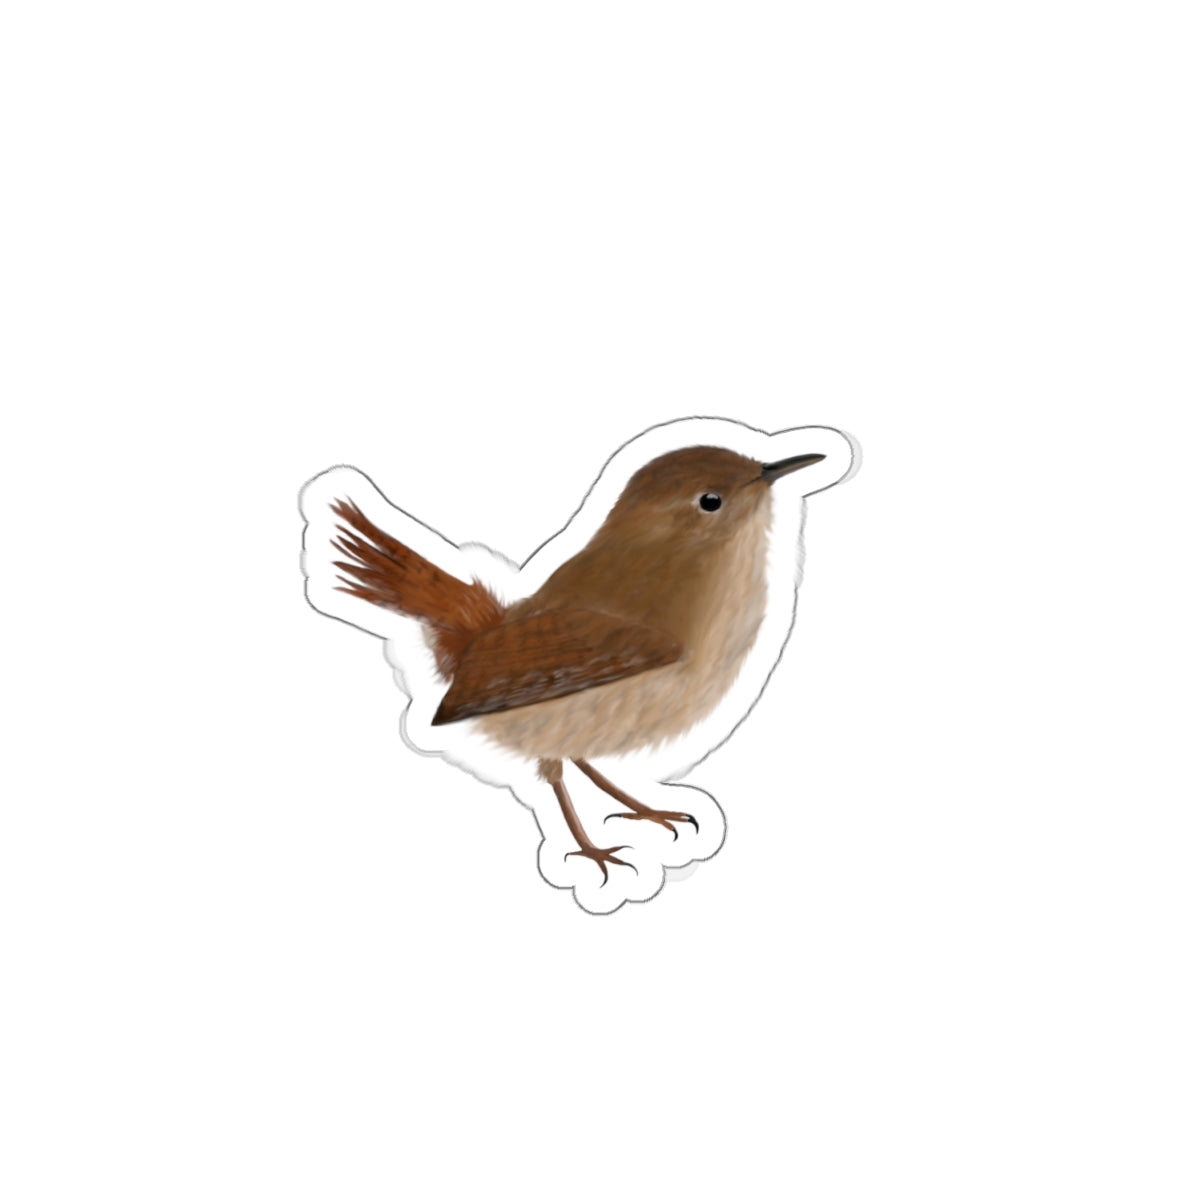 Wren Bird Kiss-Cut Sticker